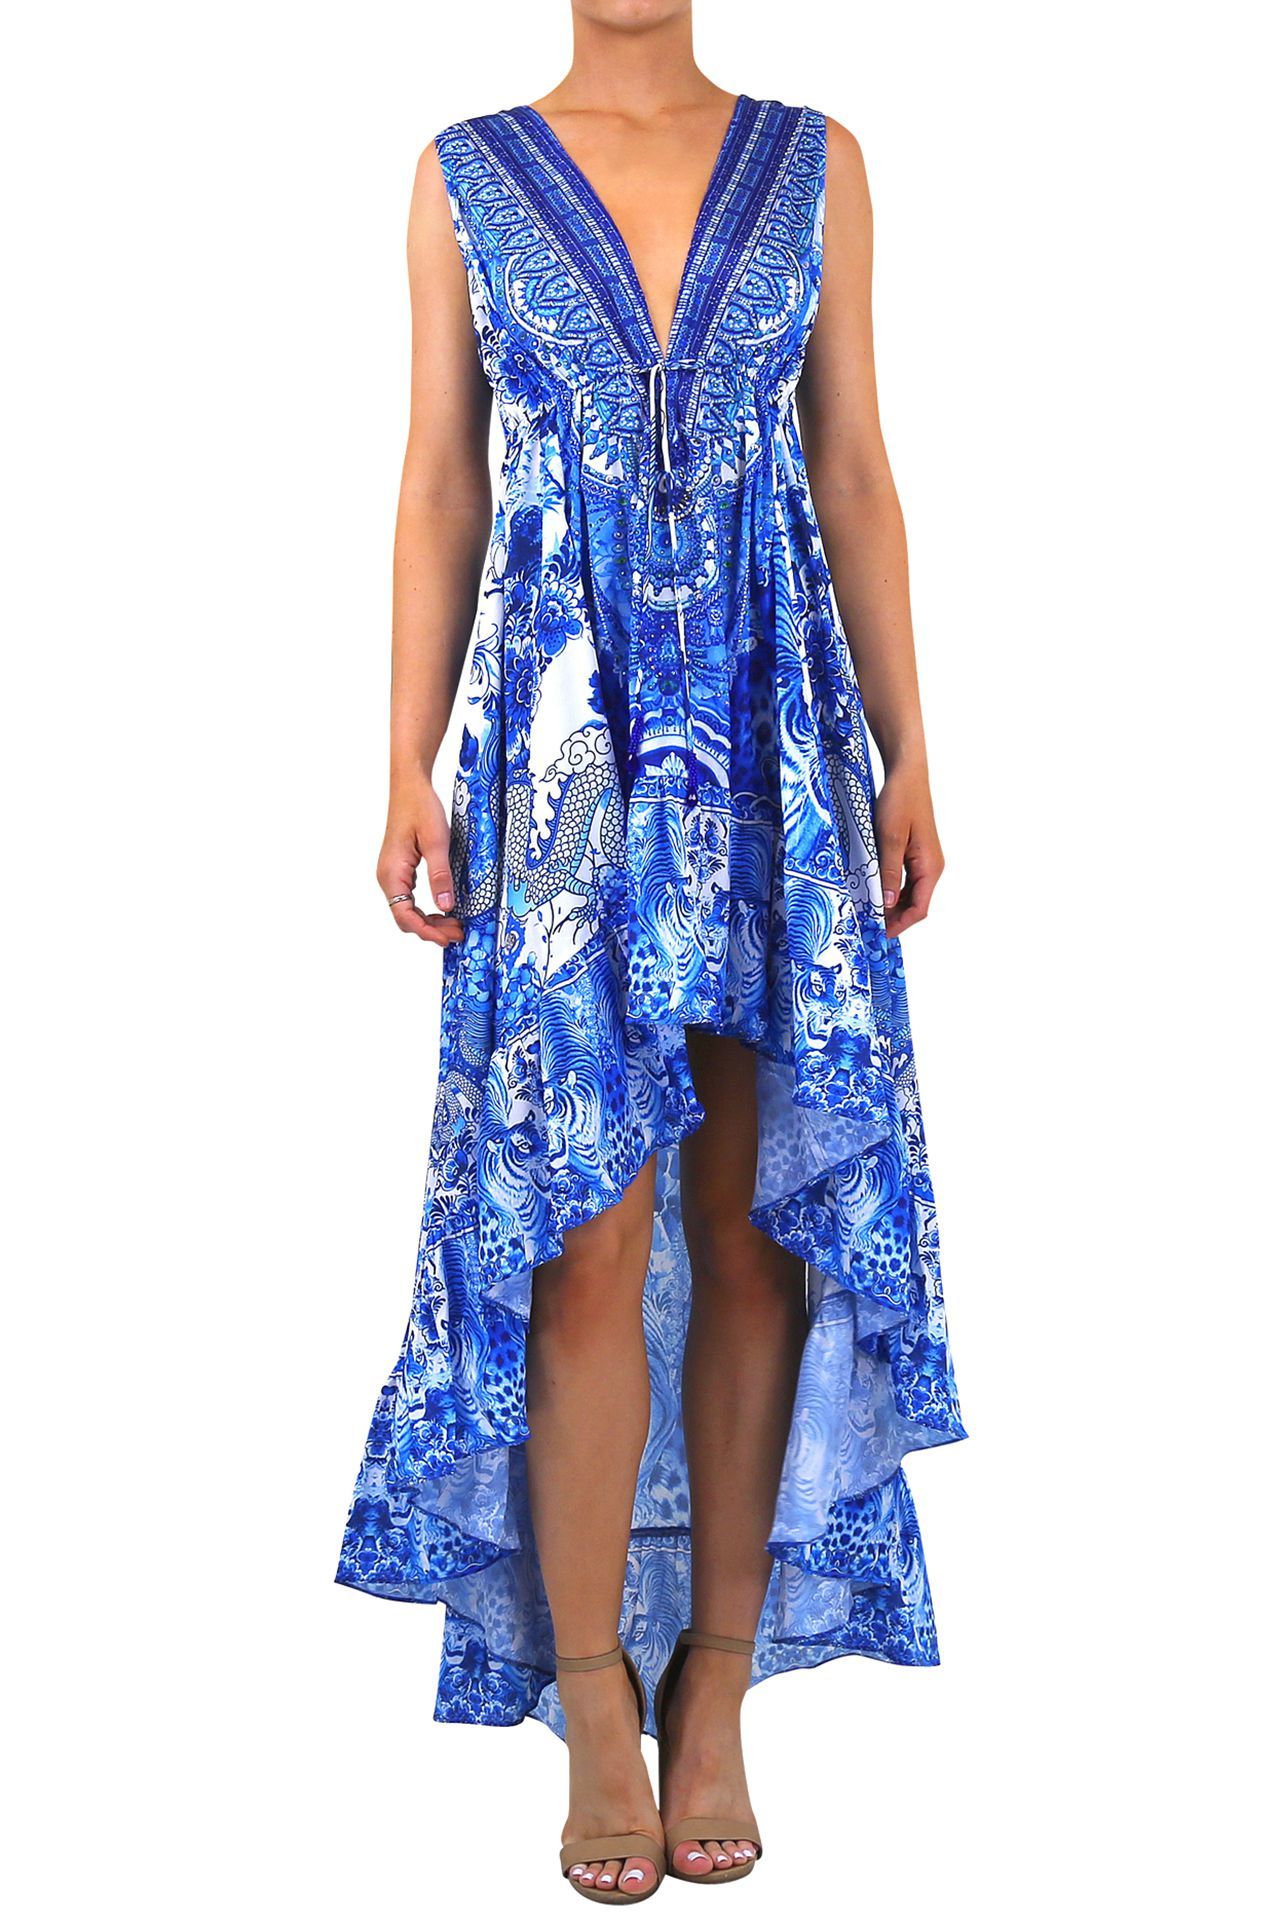 Designer-Hi-Low-Dress-In-Blue-For-Women